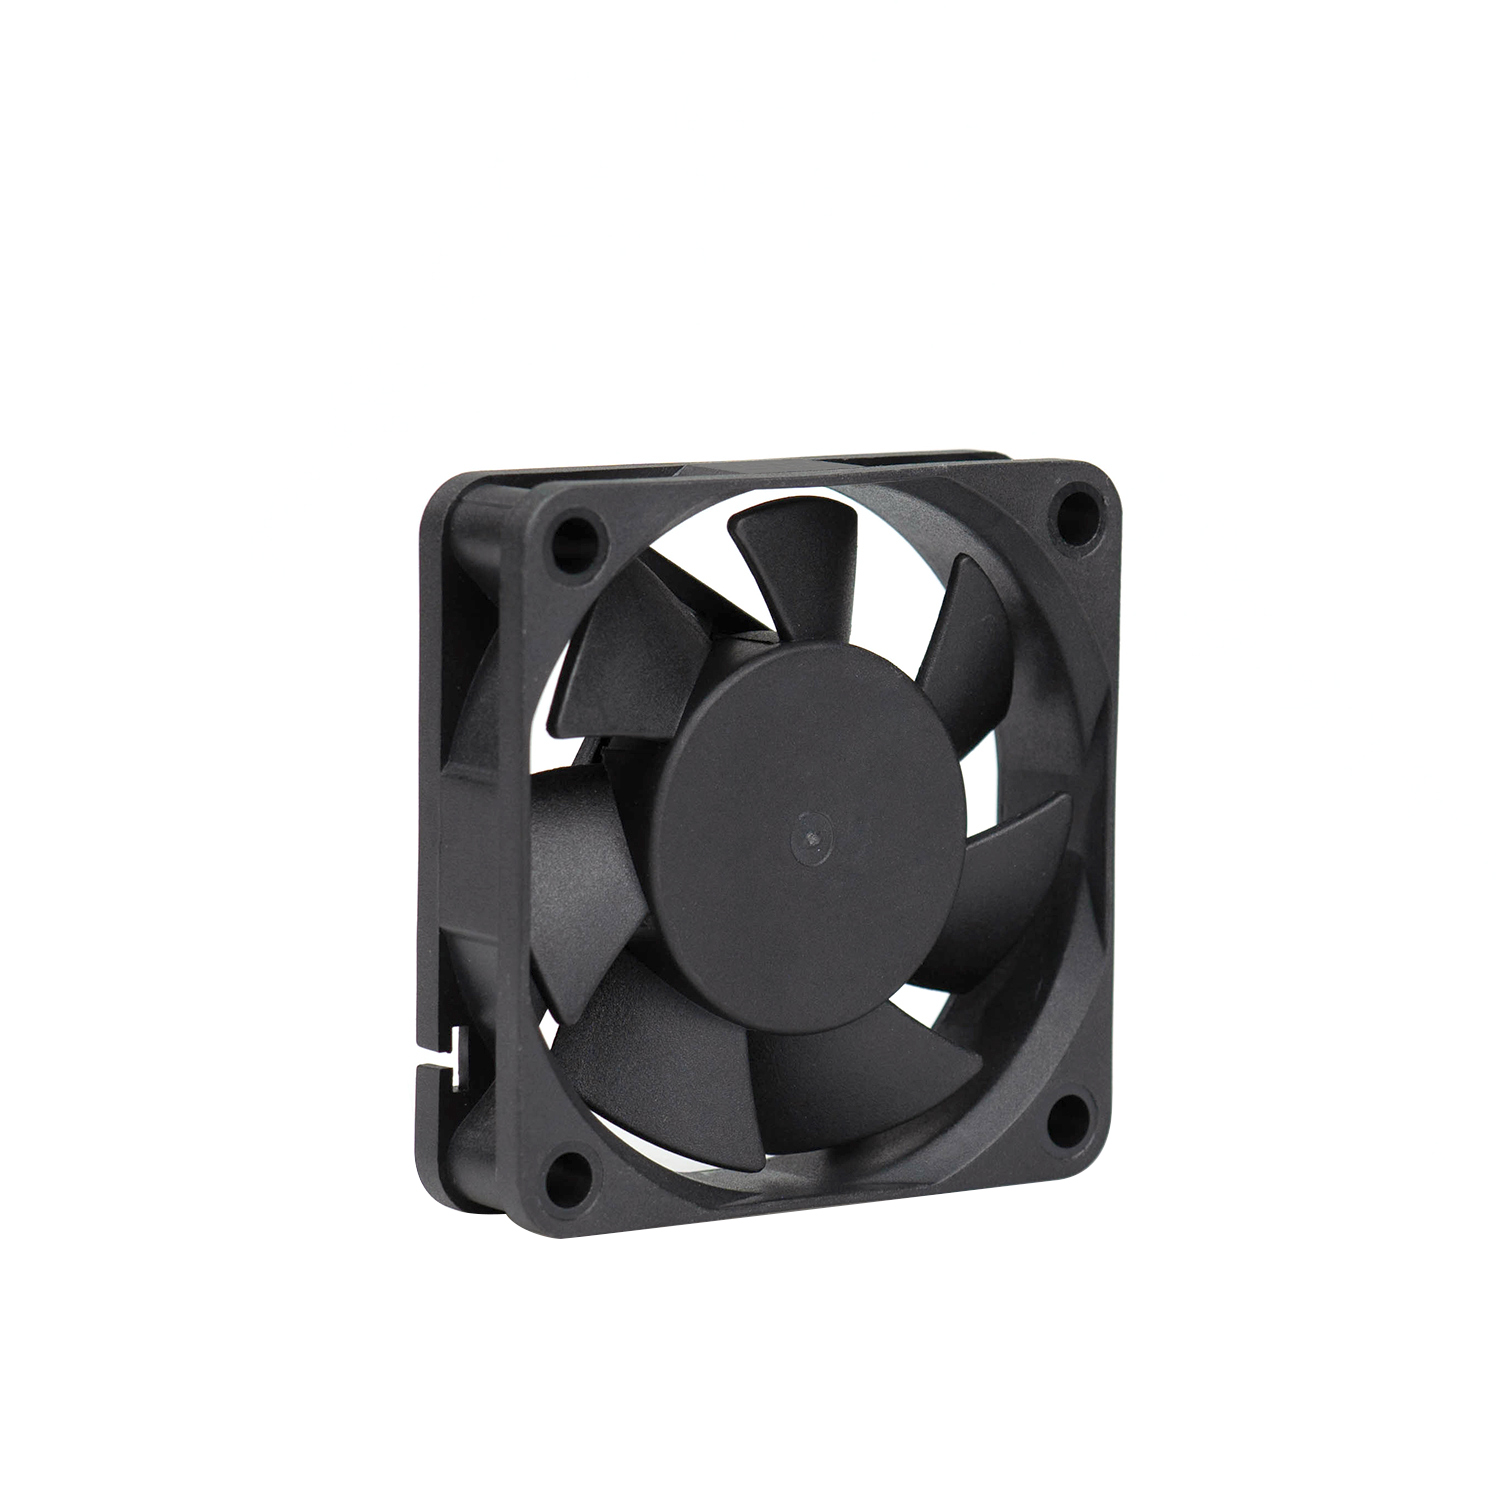 60x60x15mm 60mm low noise 5v dc axial fan